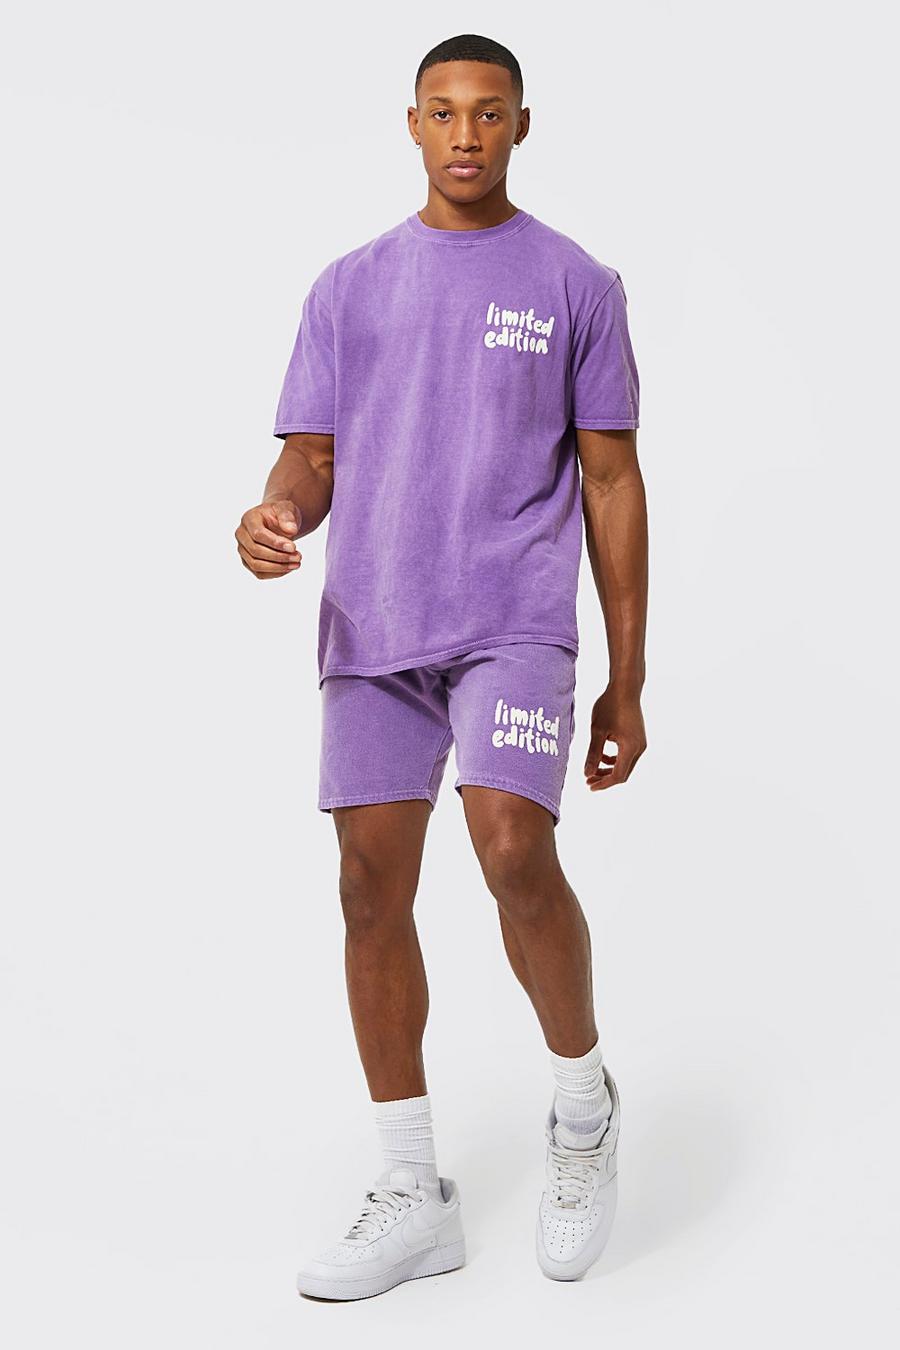 Ensemble ample avec t-shirt et short - Limited Edition, Purple violet